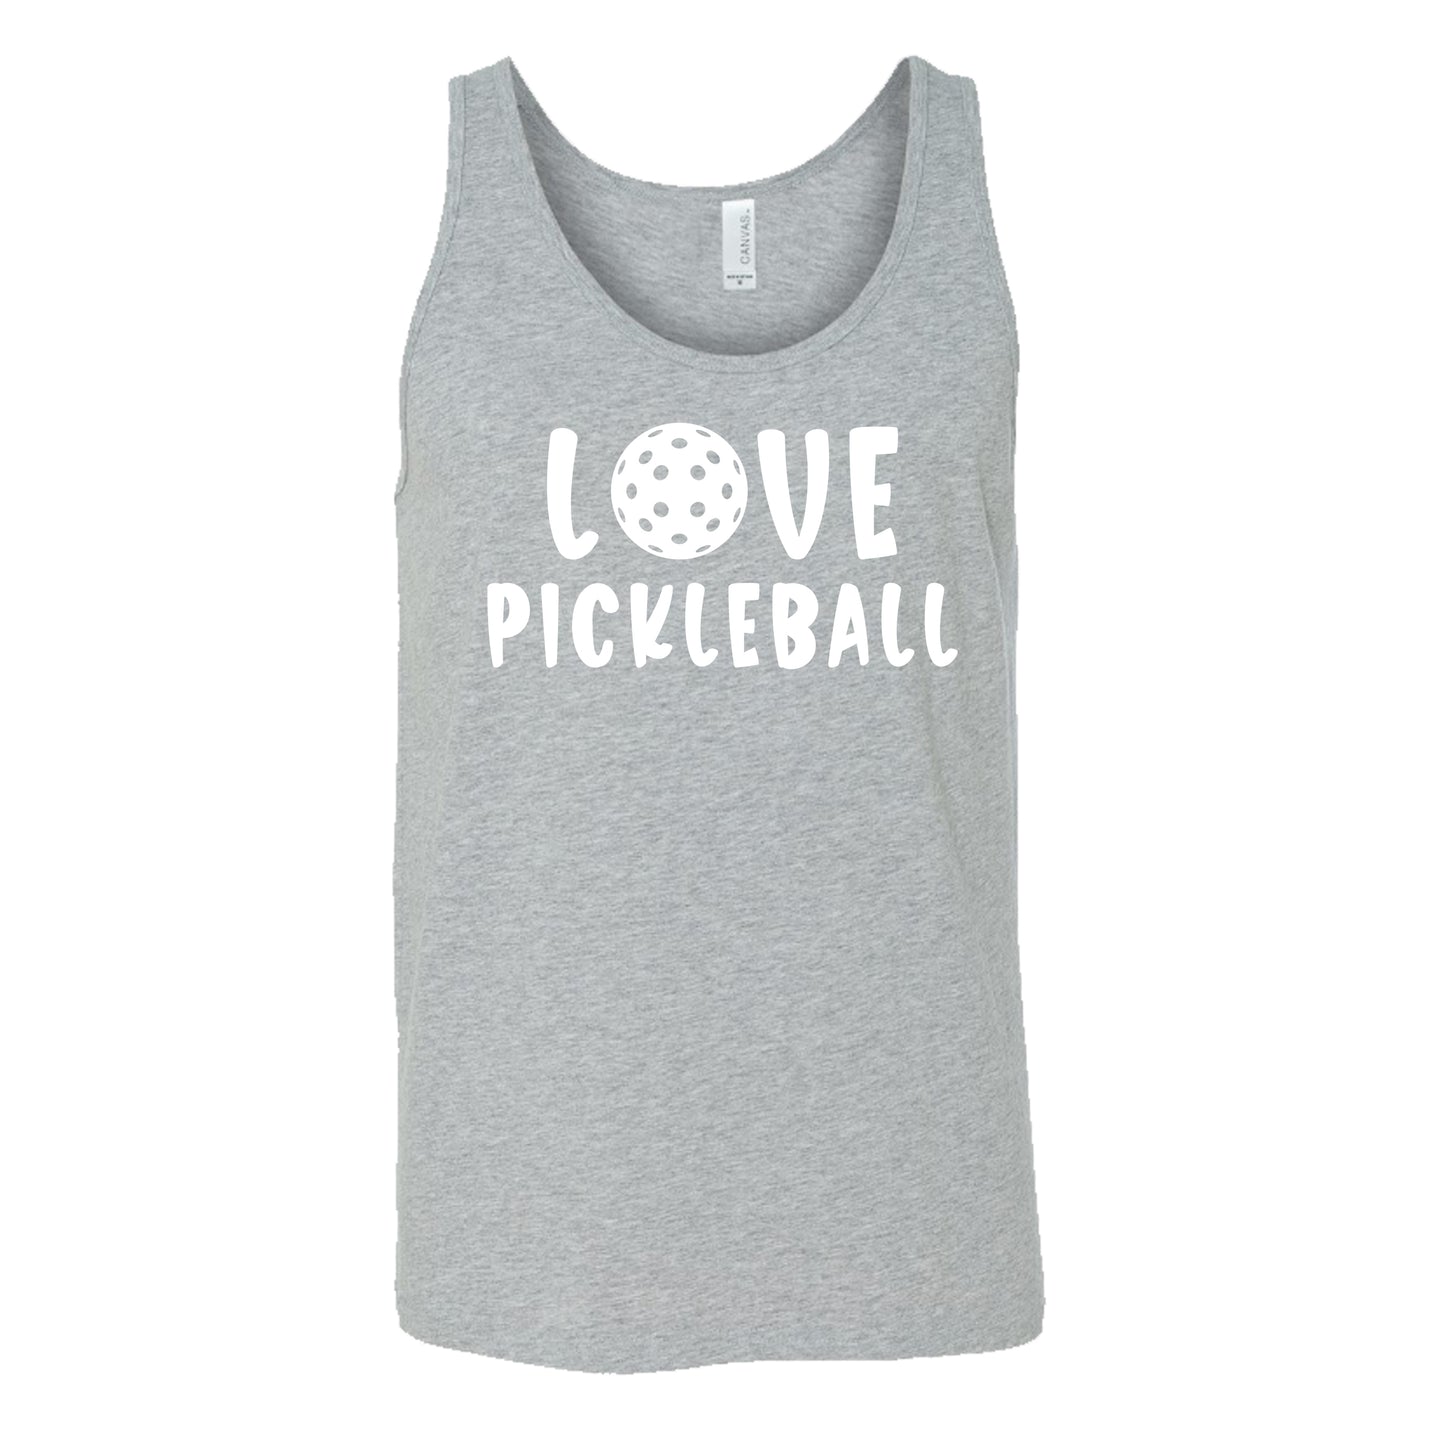 Love Pickleball Shirt Unisex